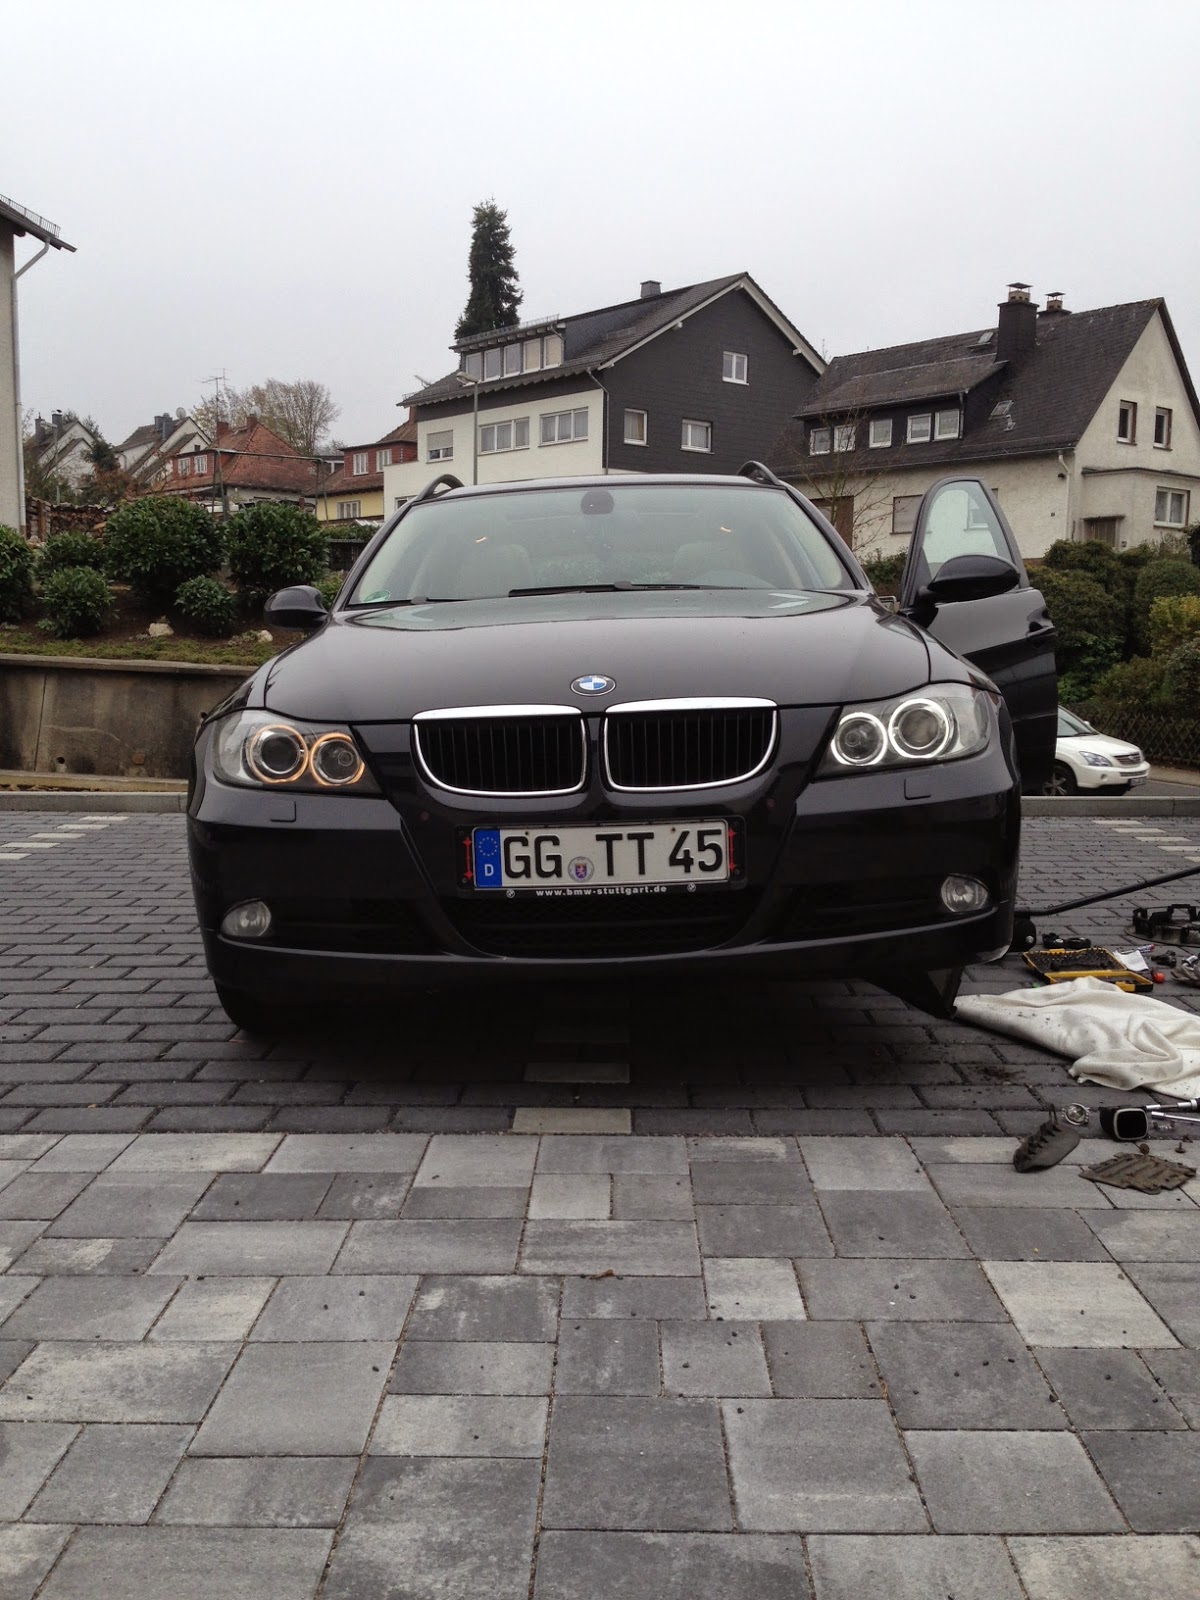 Mal schnell die Birnen vom Standlicht wechseln  #BMW #E90